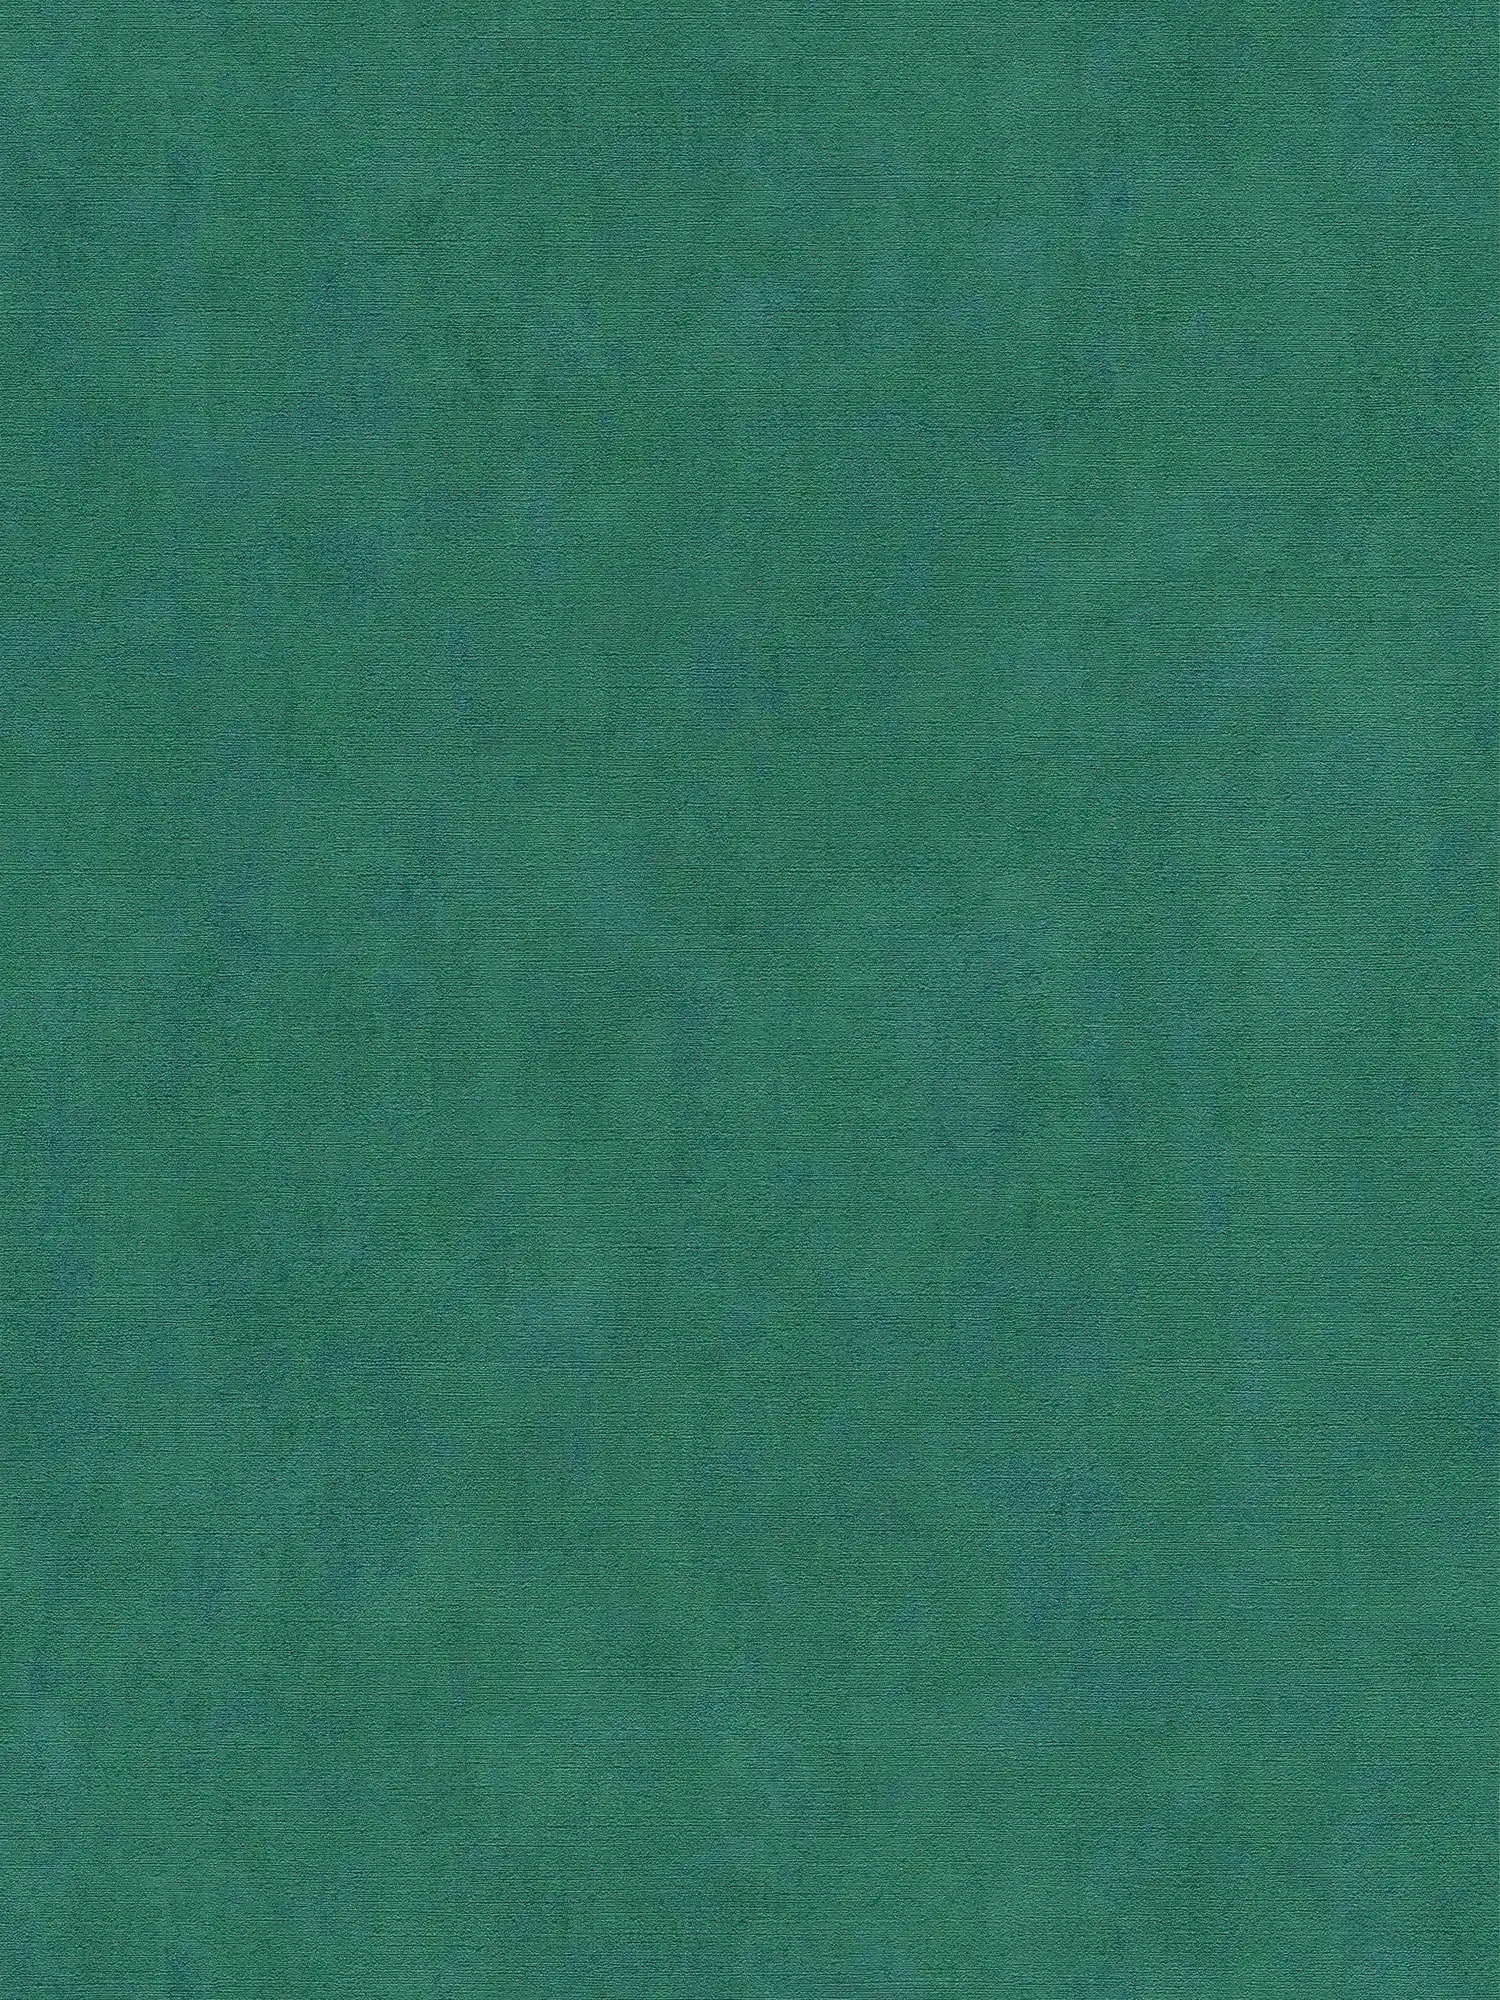 Papier peint vert émeraude chiné avec effet métallique bleu - bleu, vert
